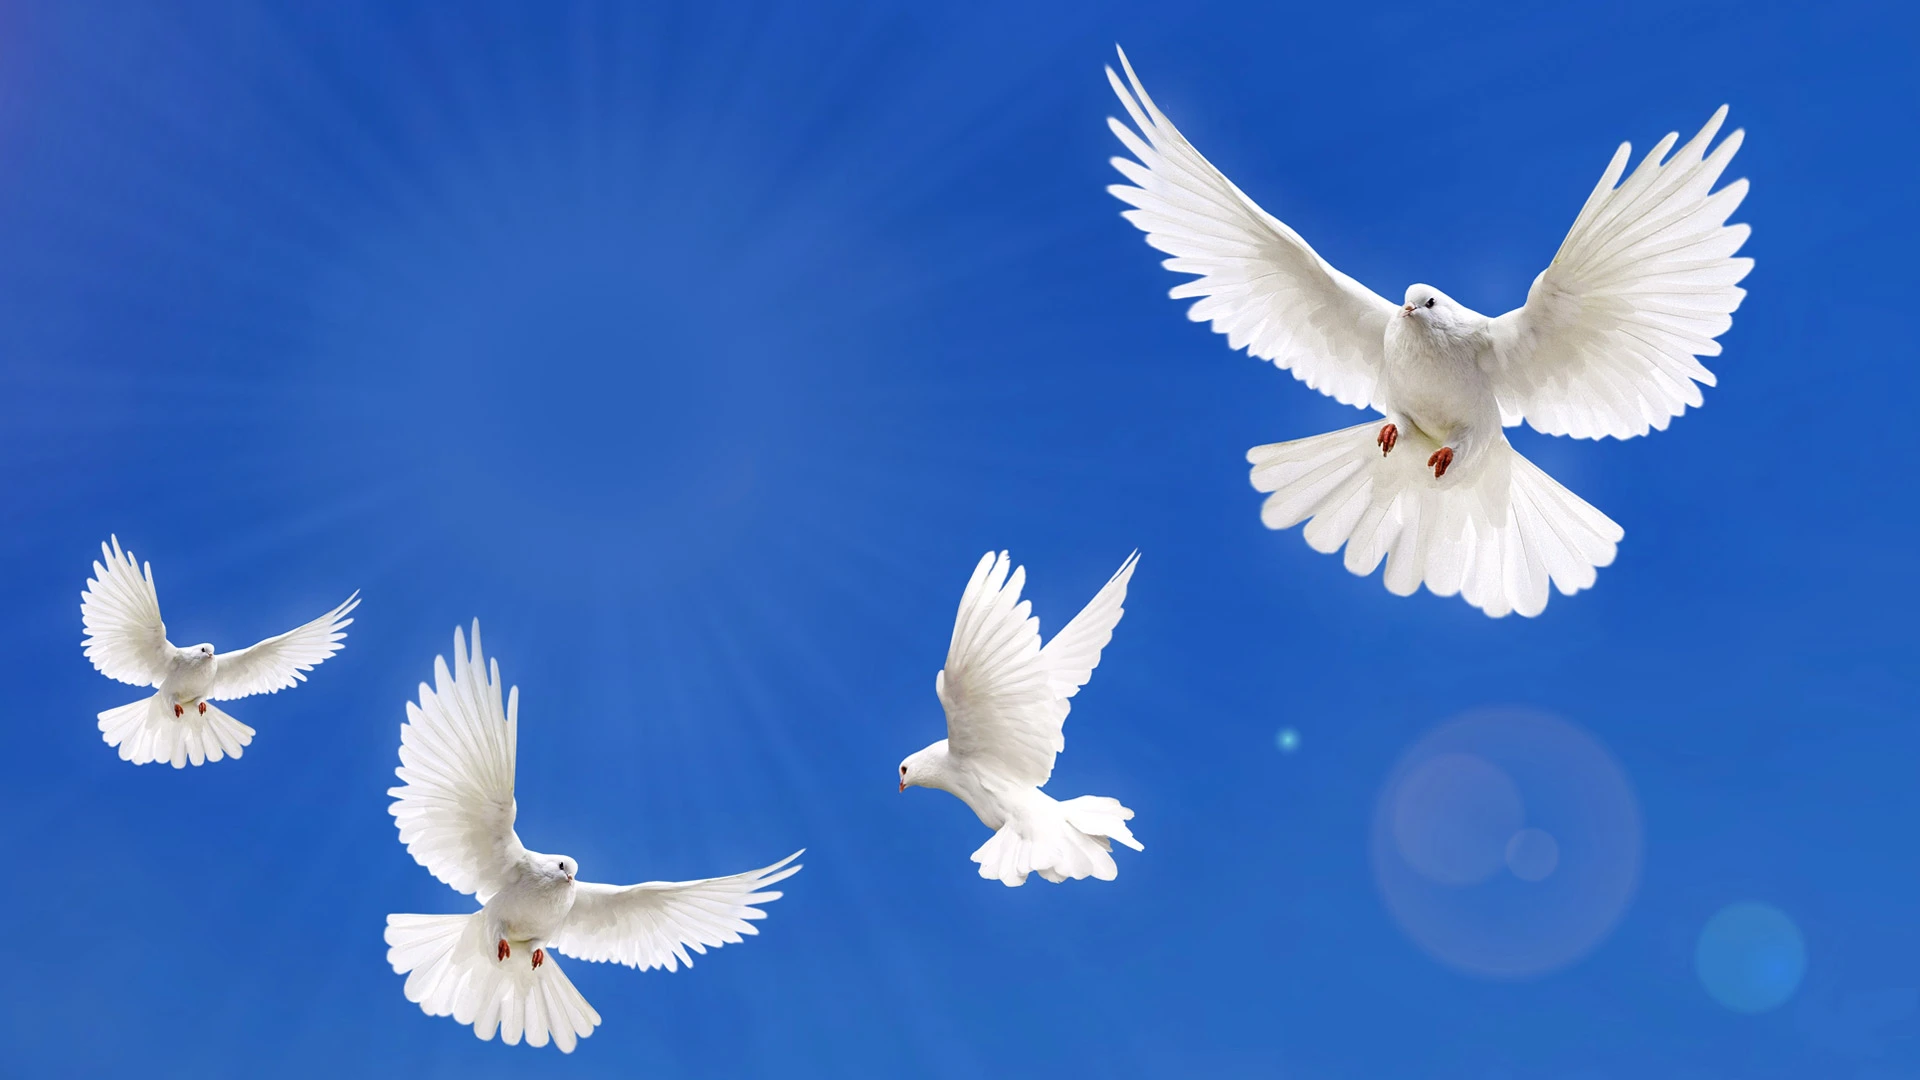 White doves flying through the sky.